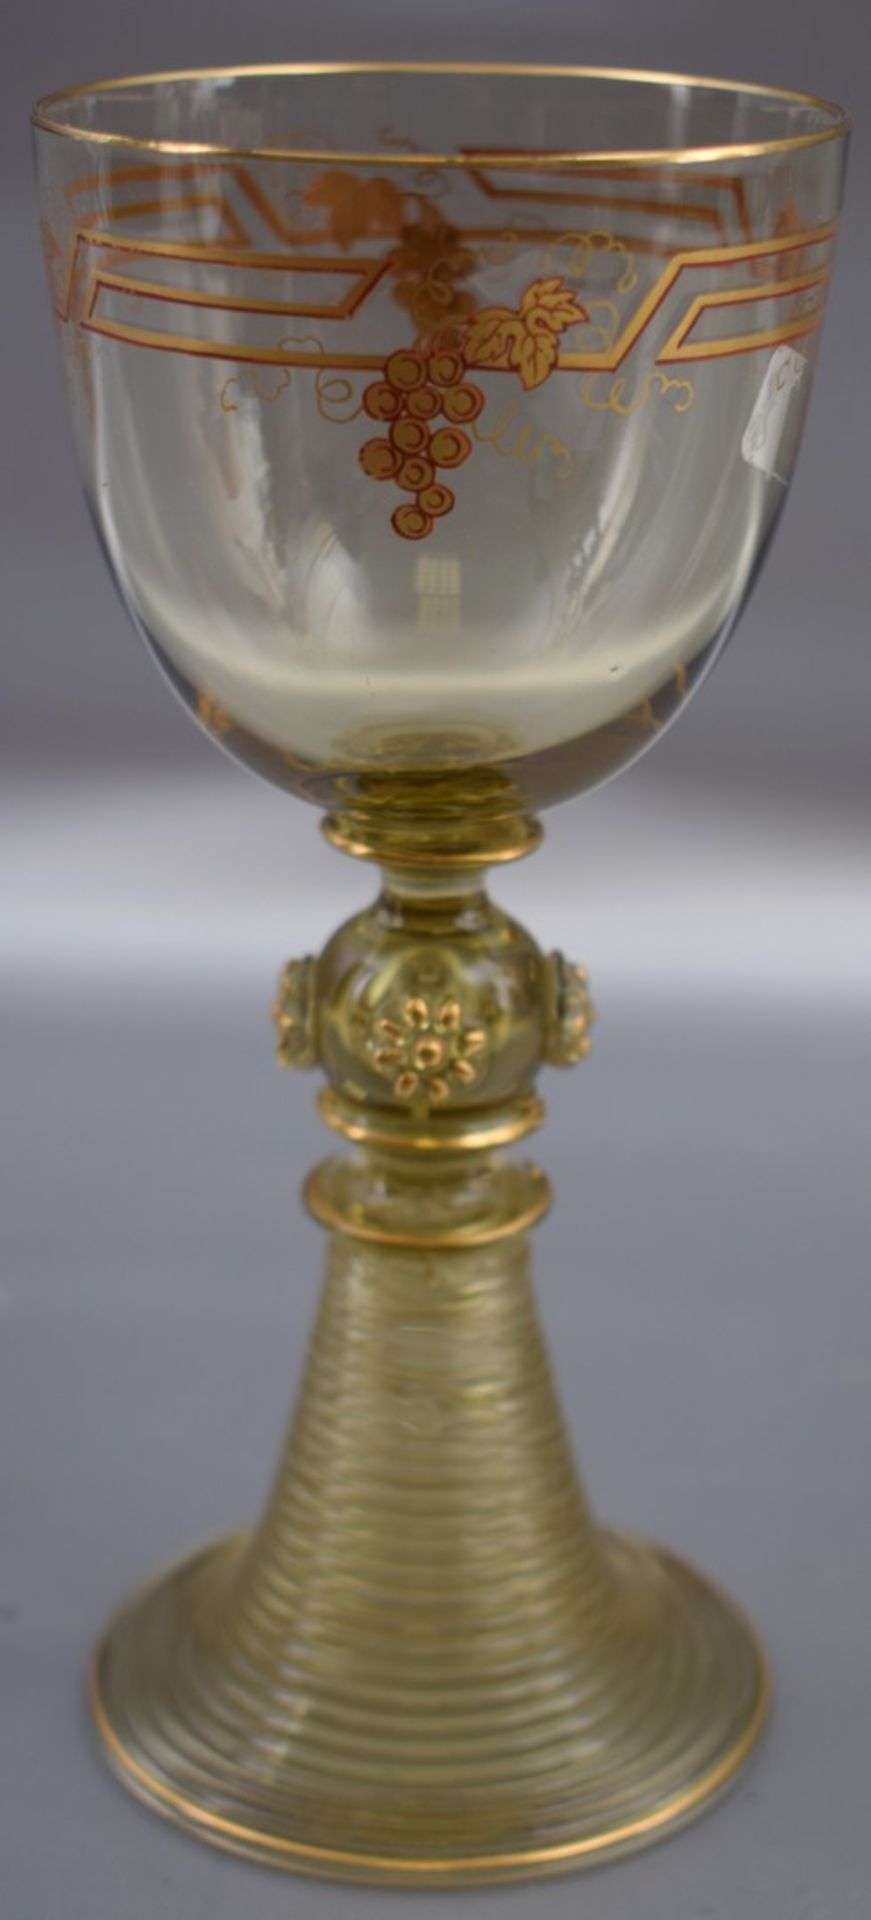 Weinglas grünes Glas, Fuß mit Noppen, Kelch mit goldenen Ranken bemalt, FM Theresienthal, H 16 cm,